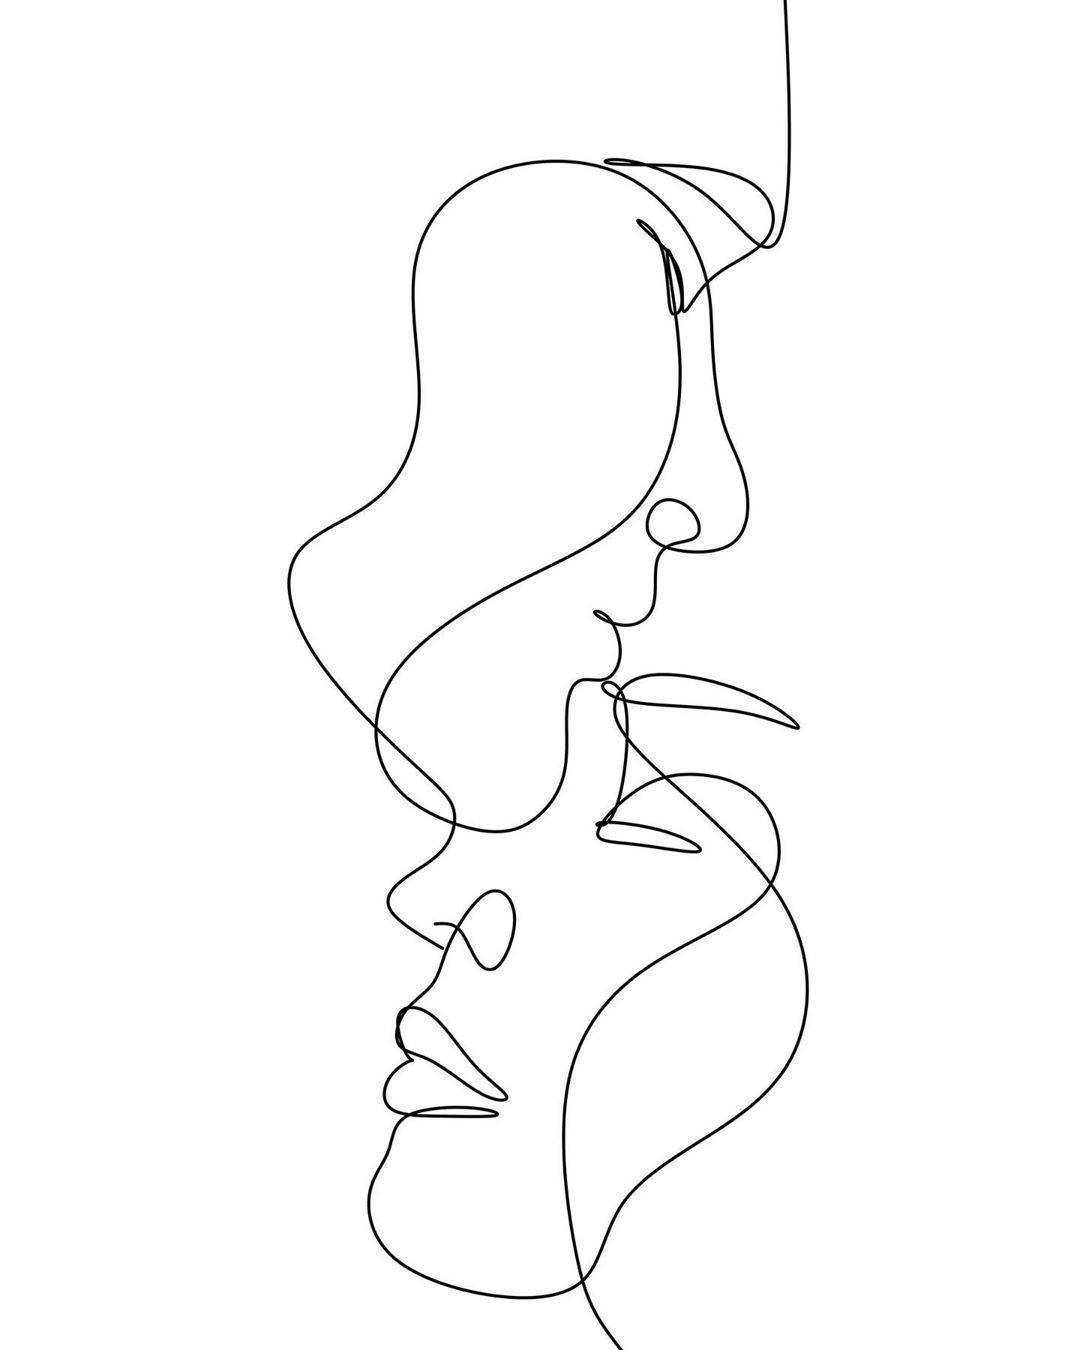 Beijona Testa Desenho Em Uma Linha. Papel de Parede